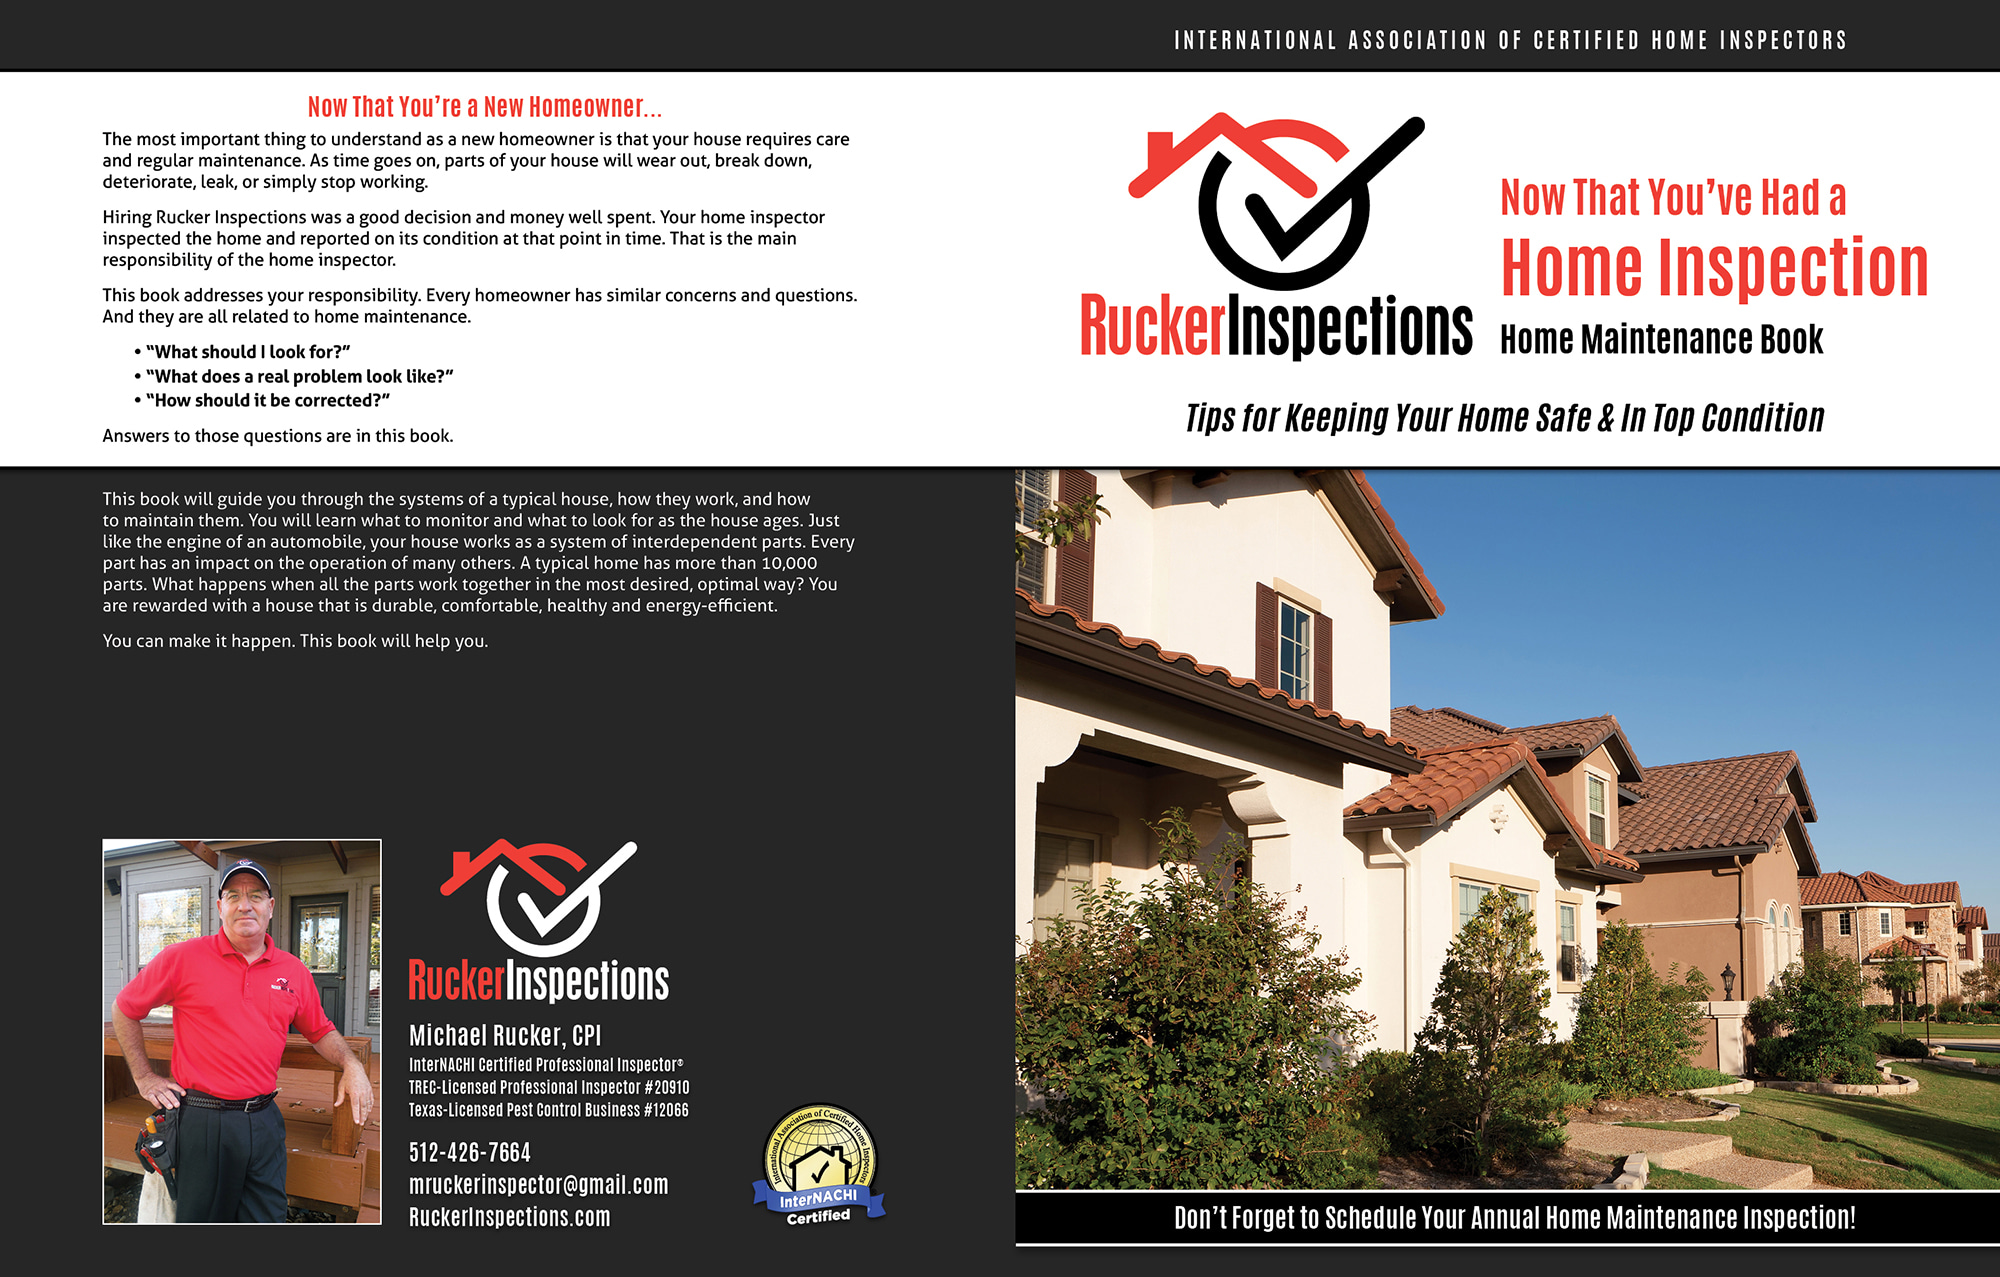 Custom Home Maintenance Book for Rucker Inspections.